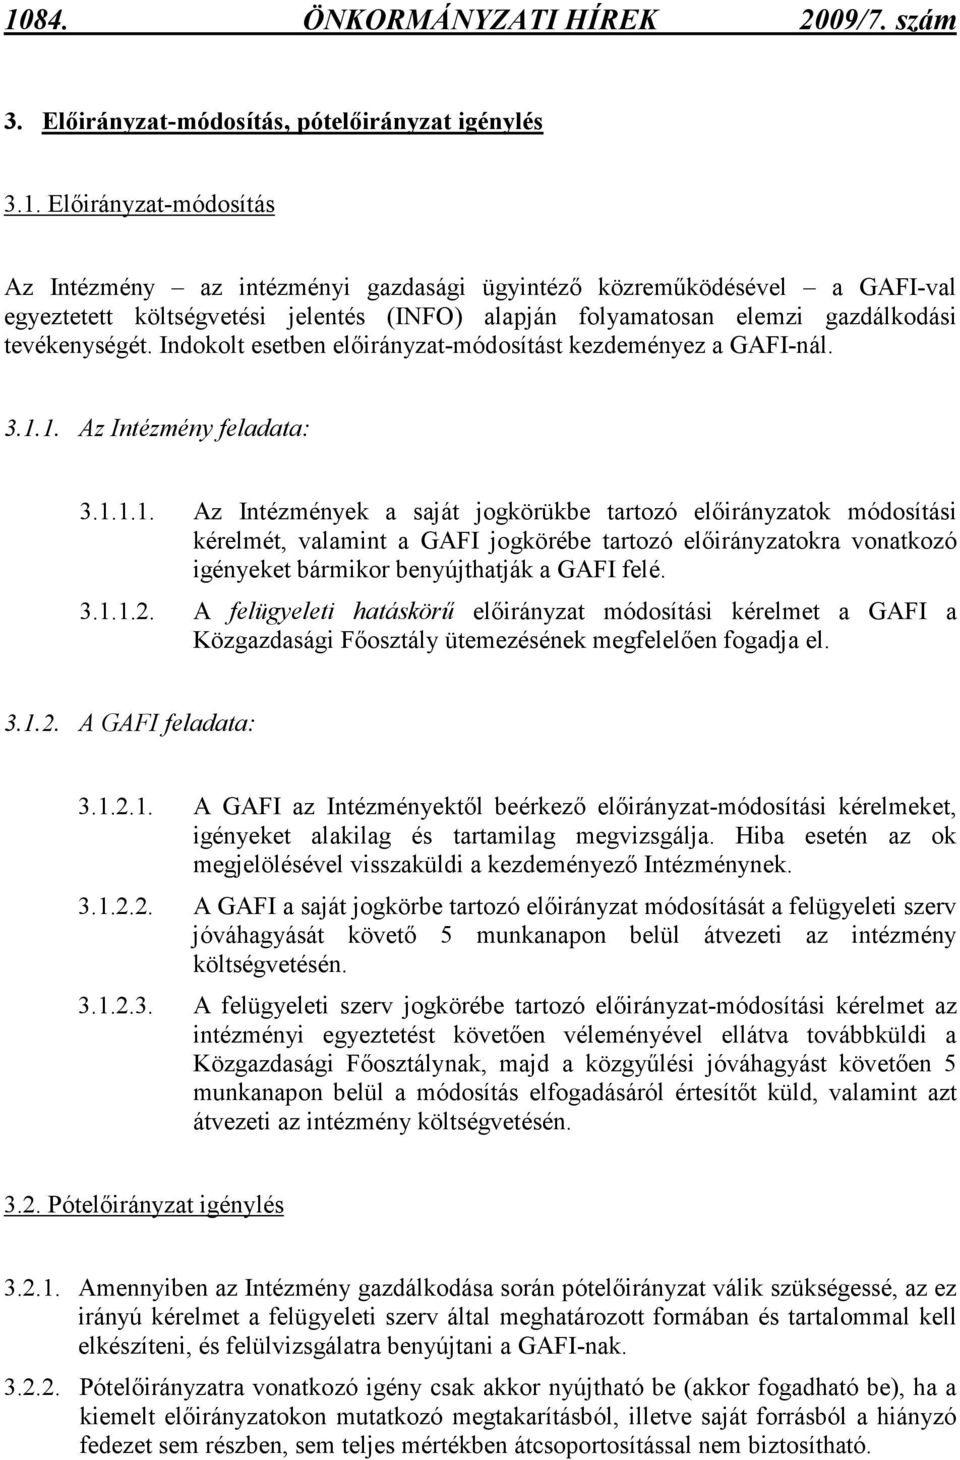 1. Az Intézmény feladata: 3.1.1.1. Az Intézmények a saját jogkörükbe tartozó elıirányzatok módosítási kérelmét, valamint a GAFI jogkörébe tartozó elıirányzatokra vonatkozó igényeket bármikor benyújthatják a GAFI felé.